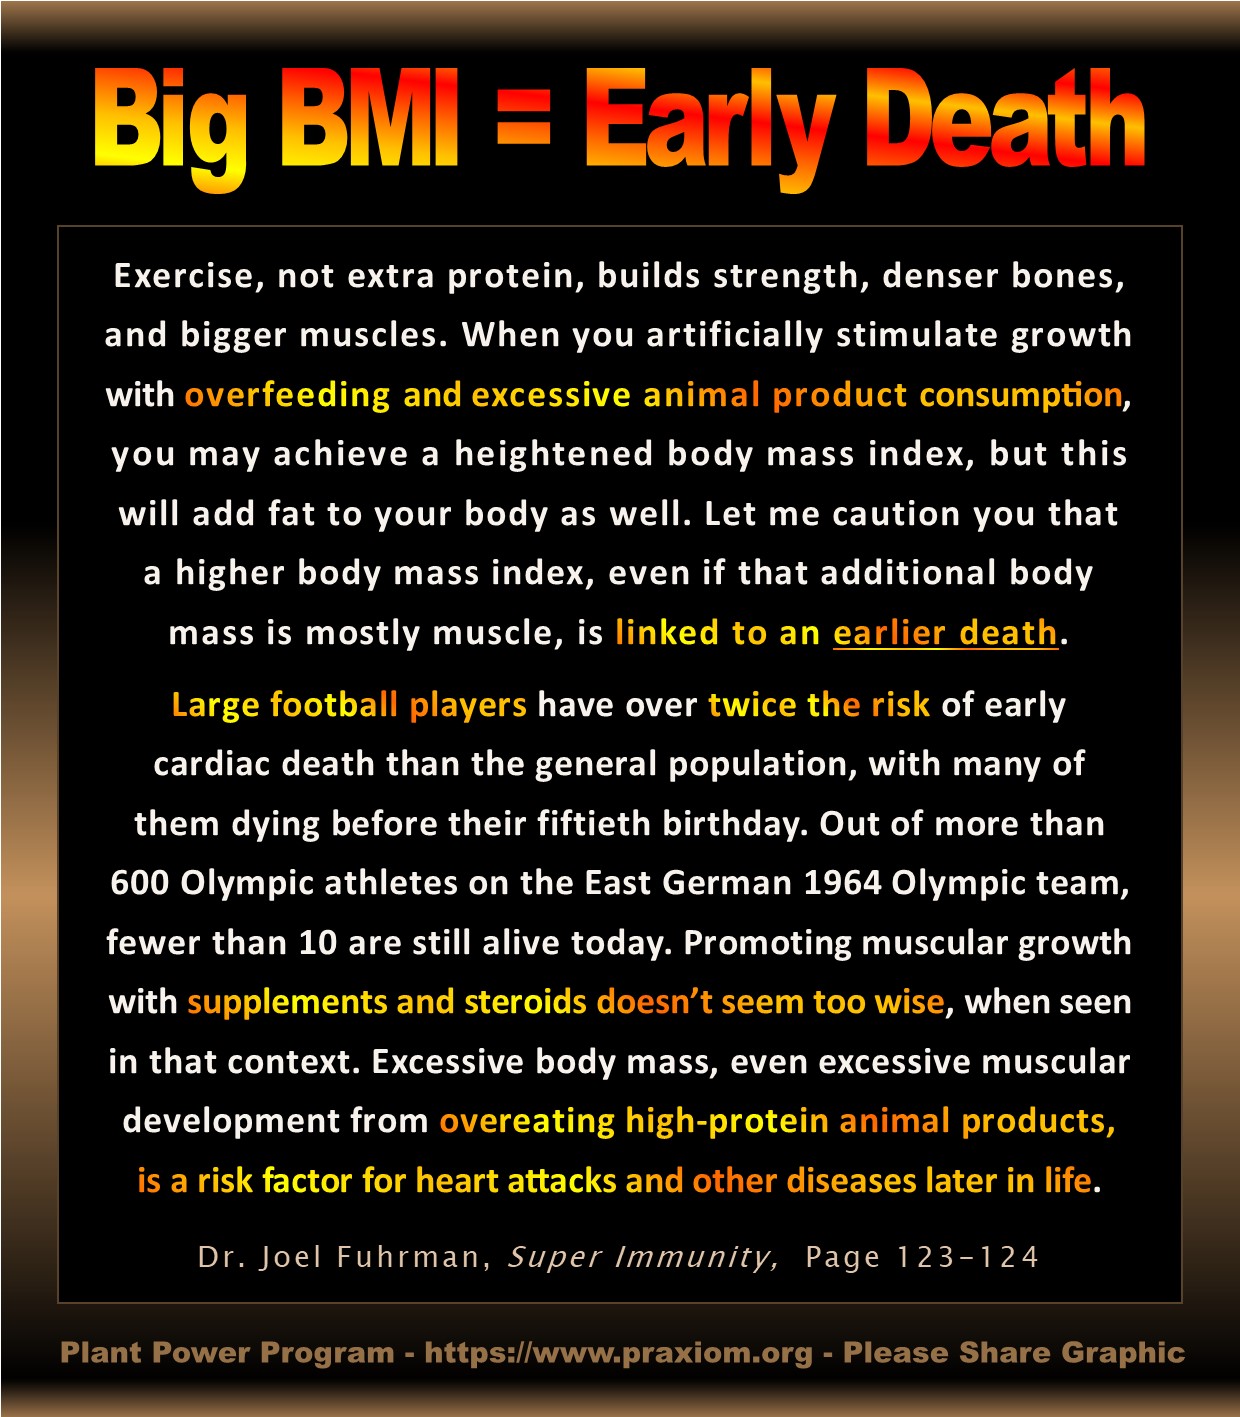 Big Body = Early Death - Dr. Joel Fuhrman